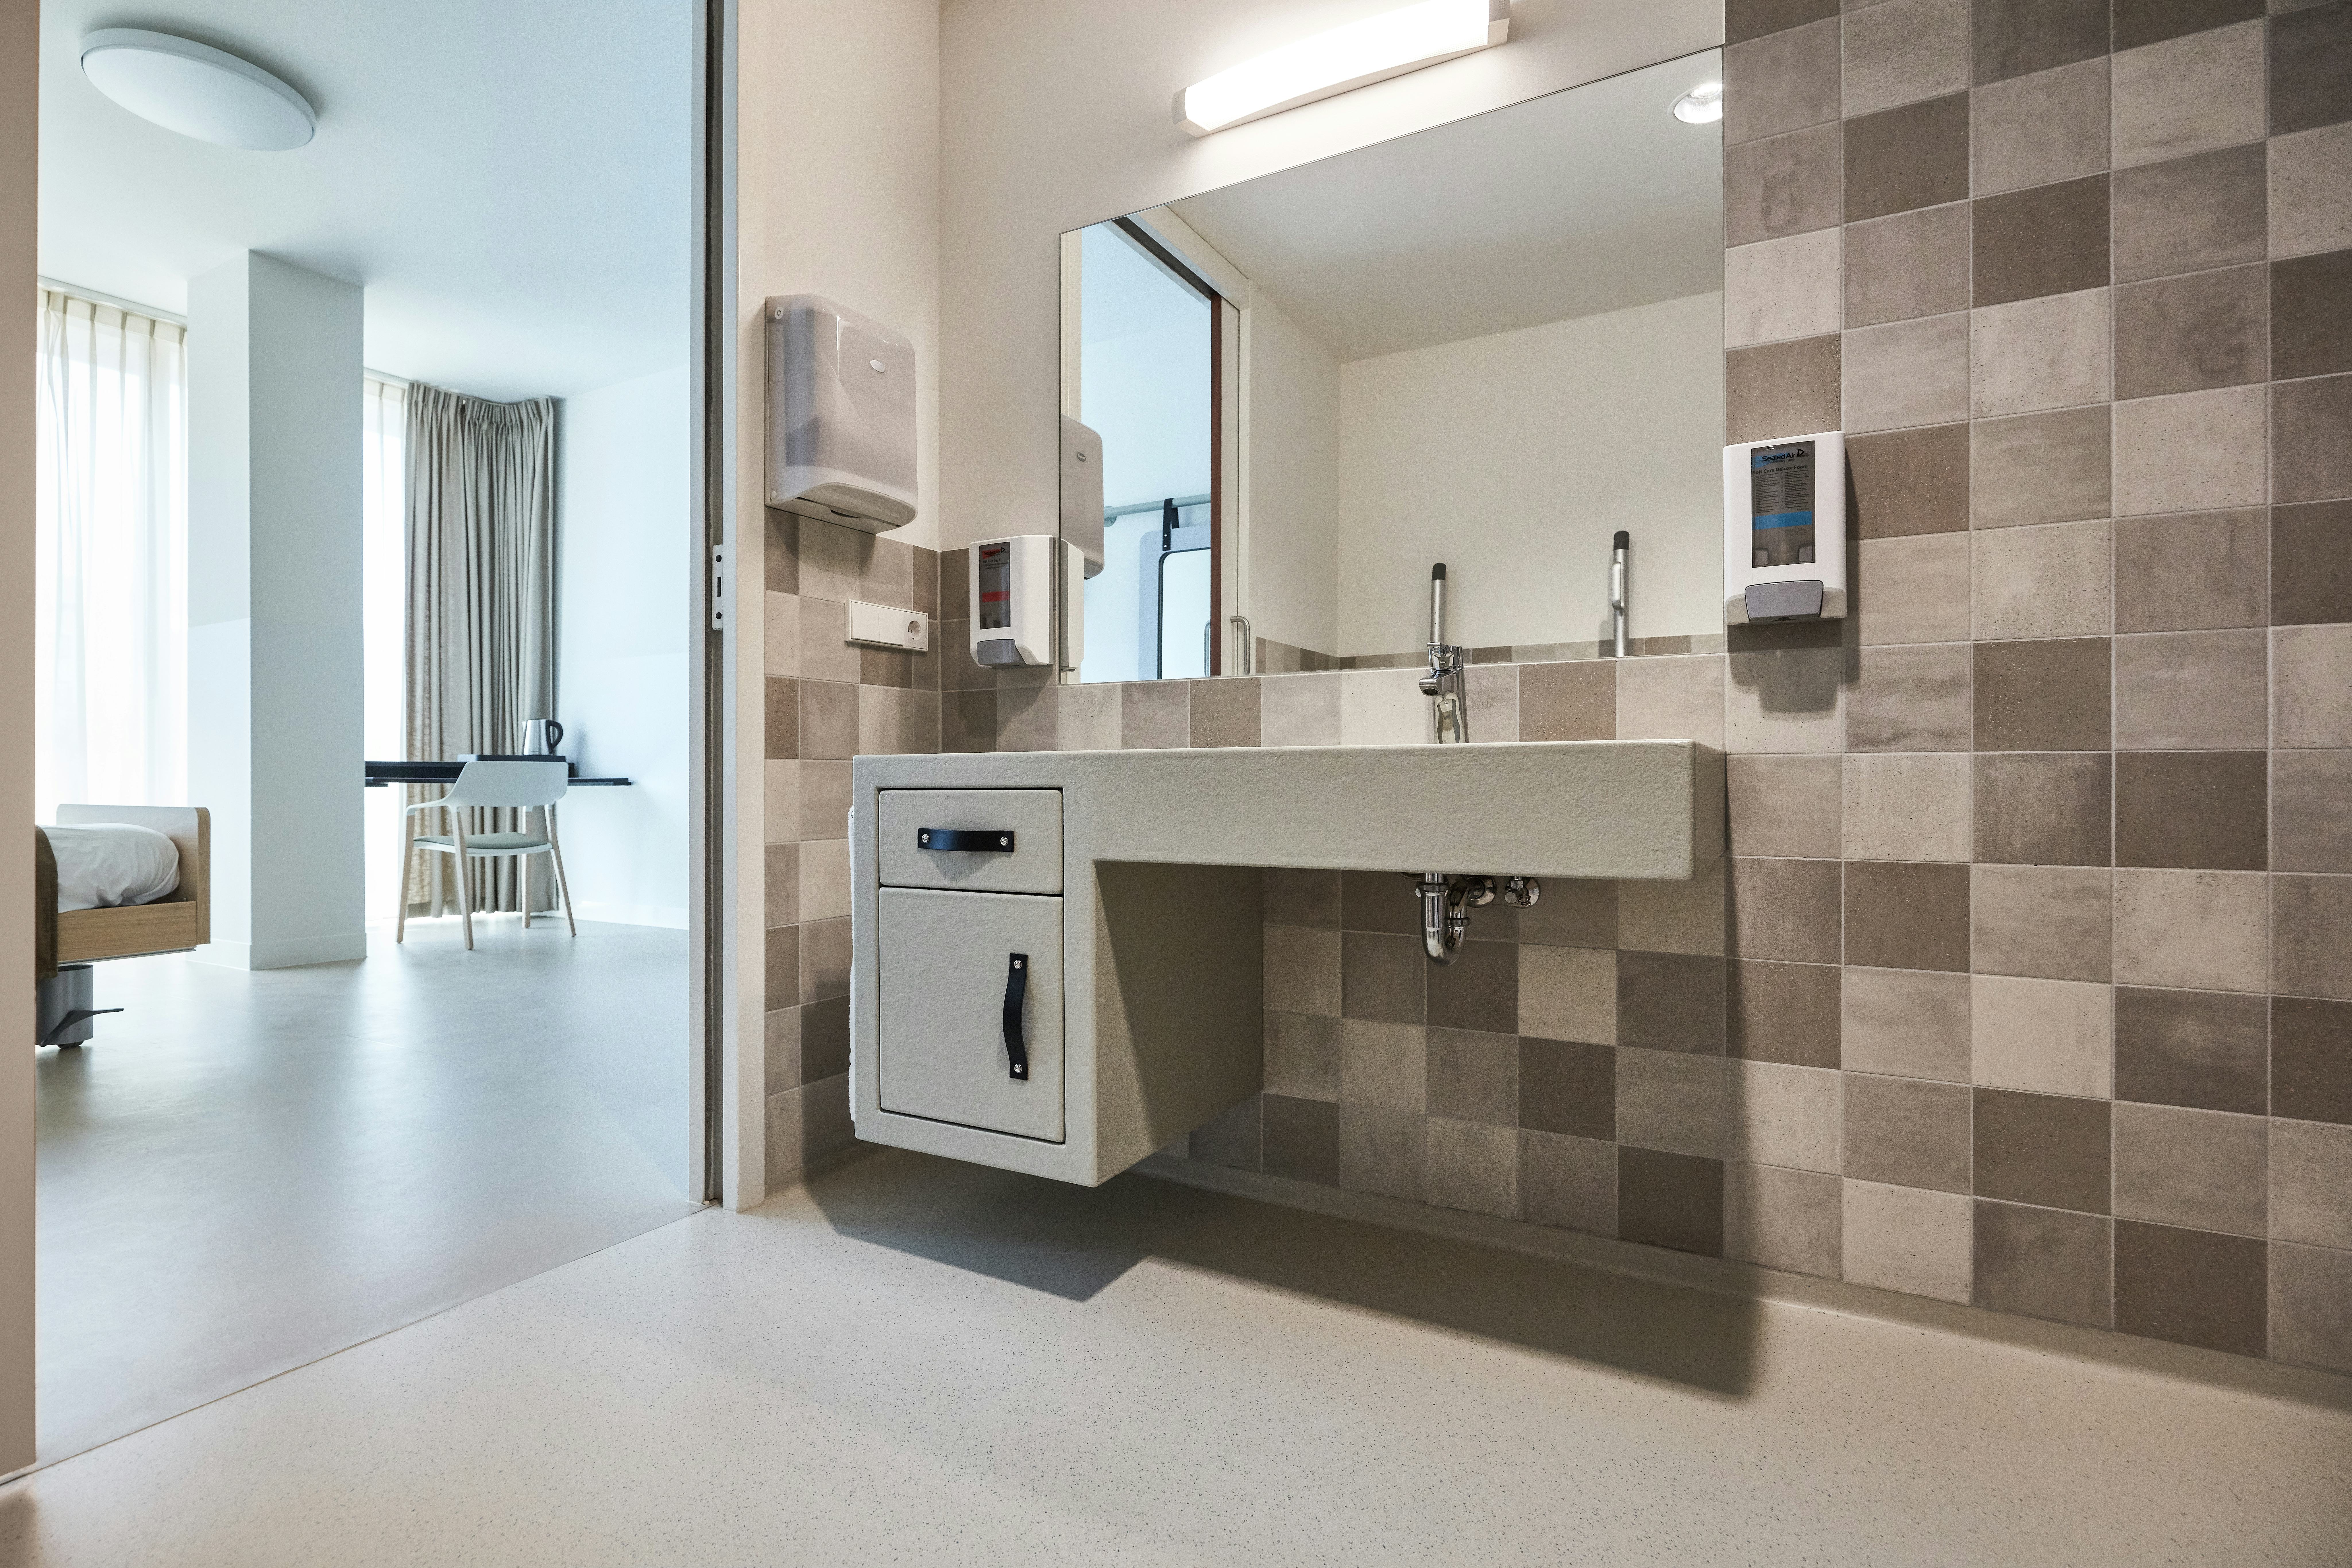 De badkamermeubels zijn door Van Eijk & Van der Lubbe ontworpen. Het beschikbare standaardmeubilair voor ziekenhuizen vonden de interieurarchitecten 'schrikbarend lelijk.' Beeld Jeroen van der Wielen
